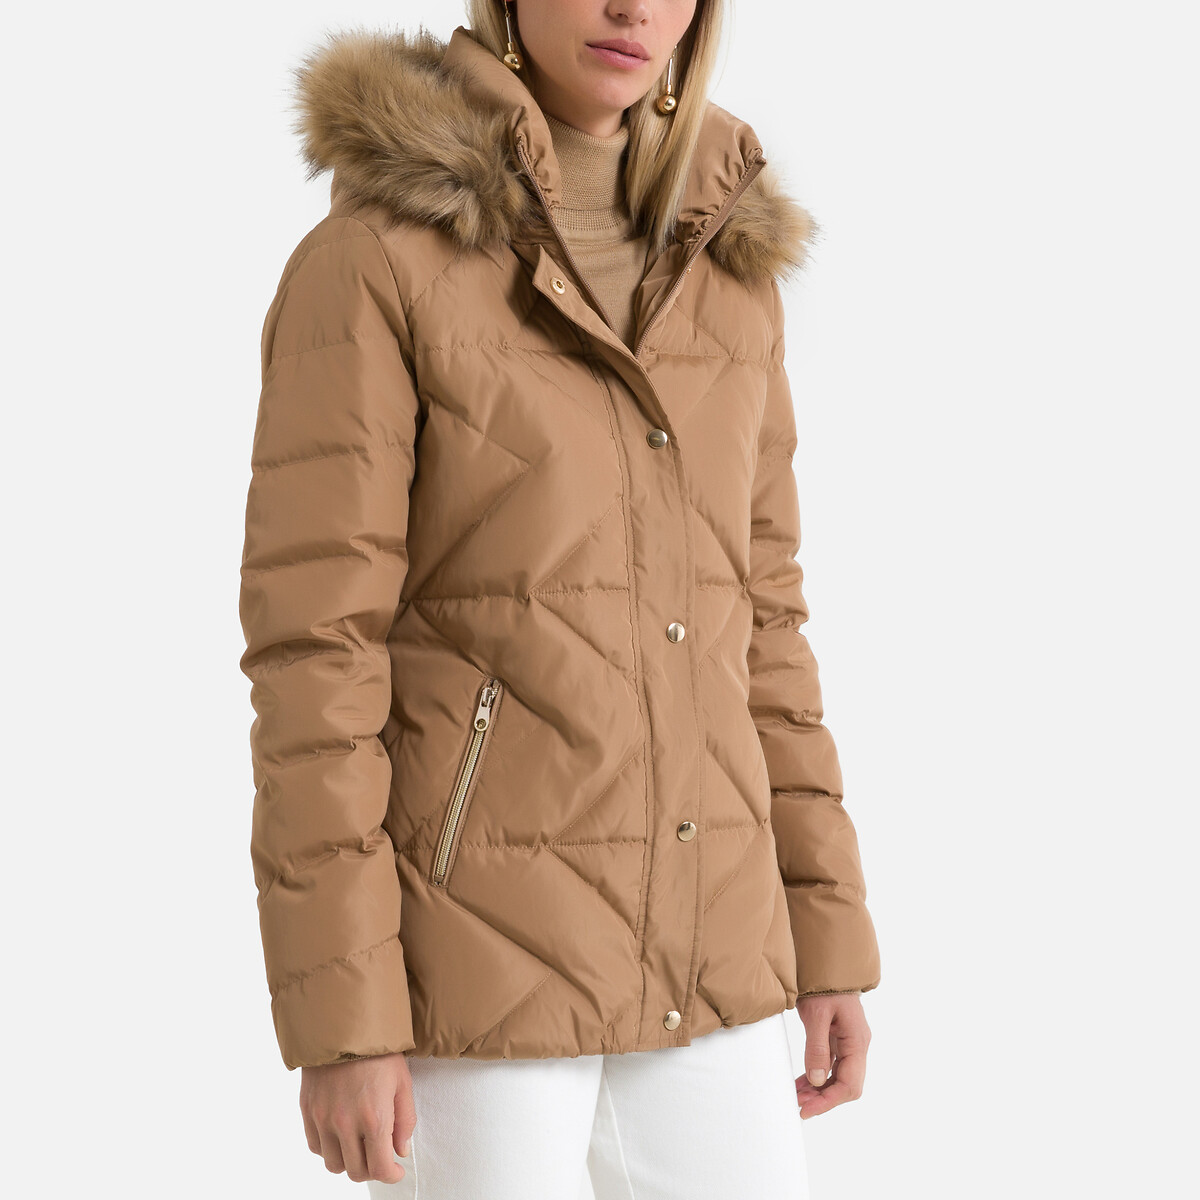 Куртка LaRedoute Стеганая с капюшоном зимняя модель 38 (FR) - 44 (RUS) бежевый, размер 38 (FR) - 44 (RUS) Стеганая с капюшоном зимняя модель 38 (FR) - 44 (RUS) бежевый - фото 1